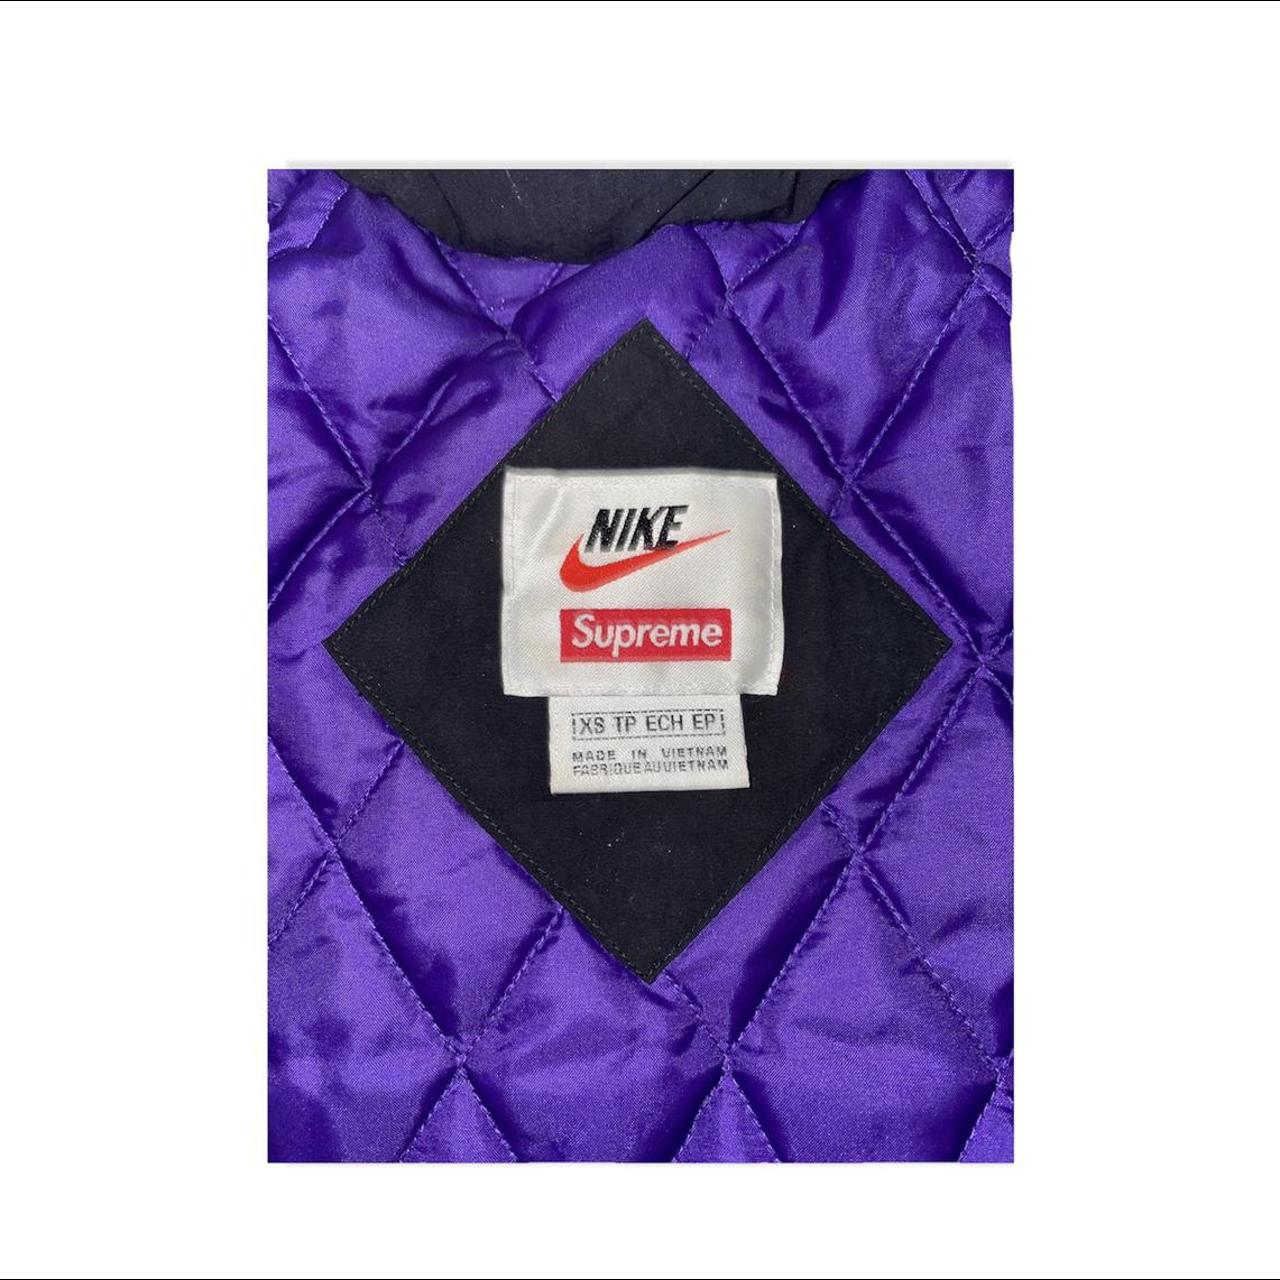 Supreme Nike hooded sport jacket in purple and - Depop